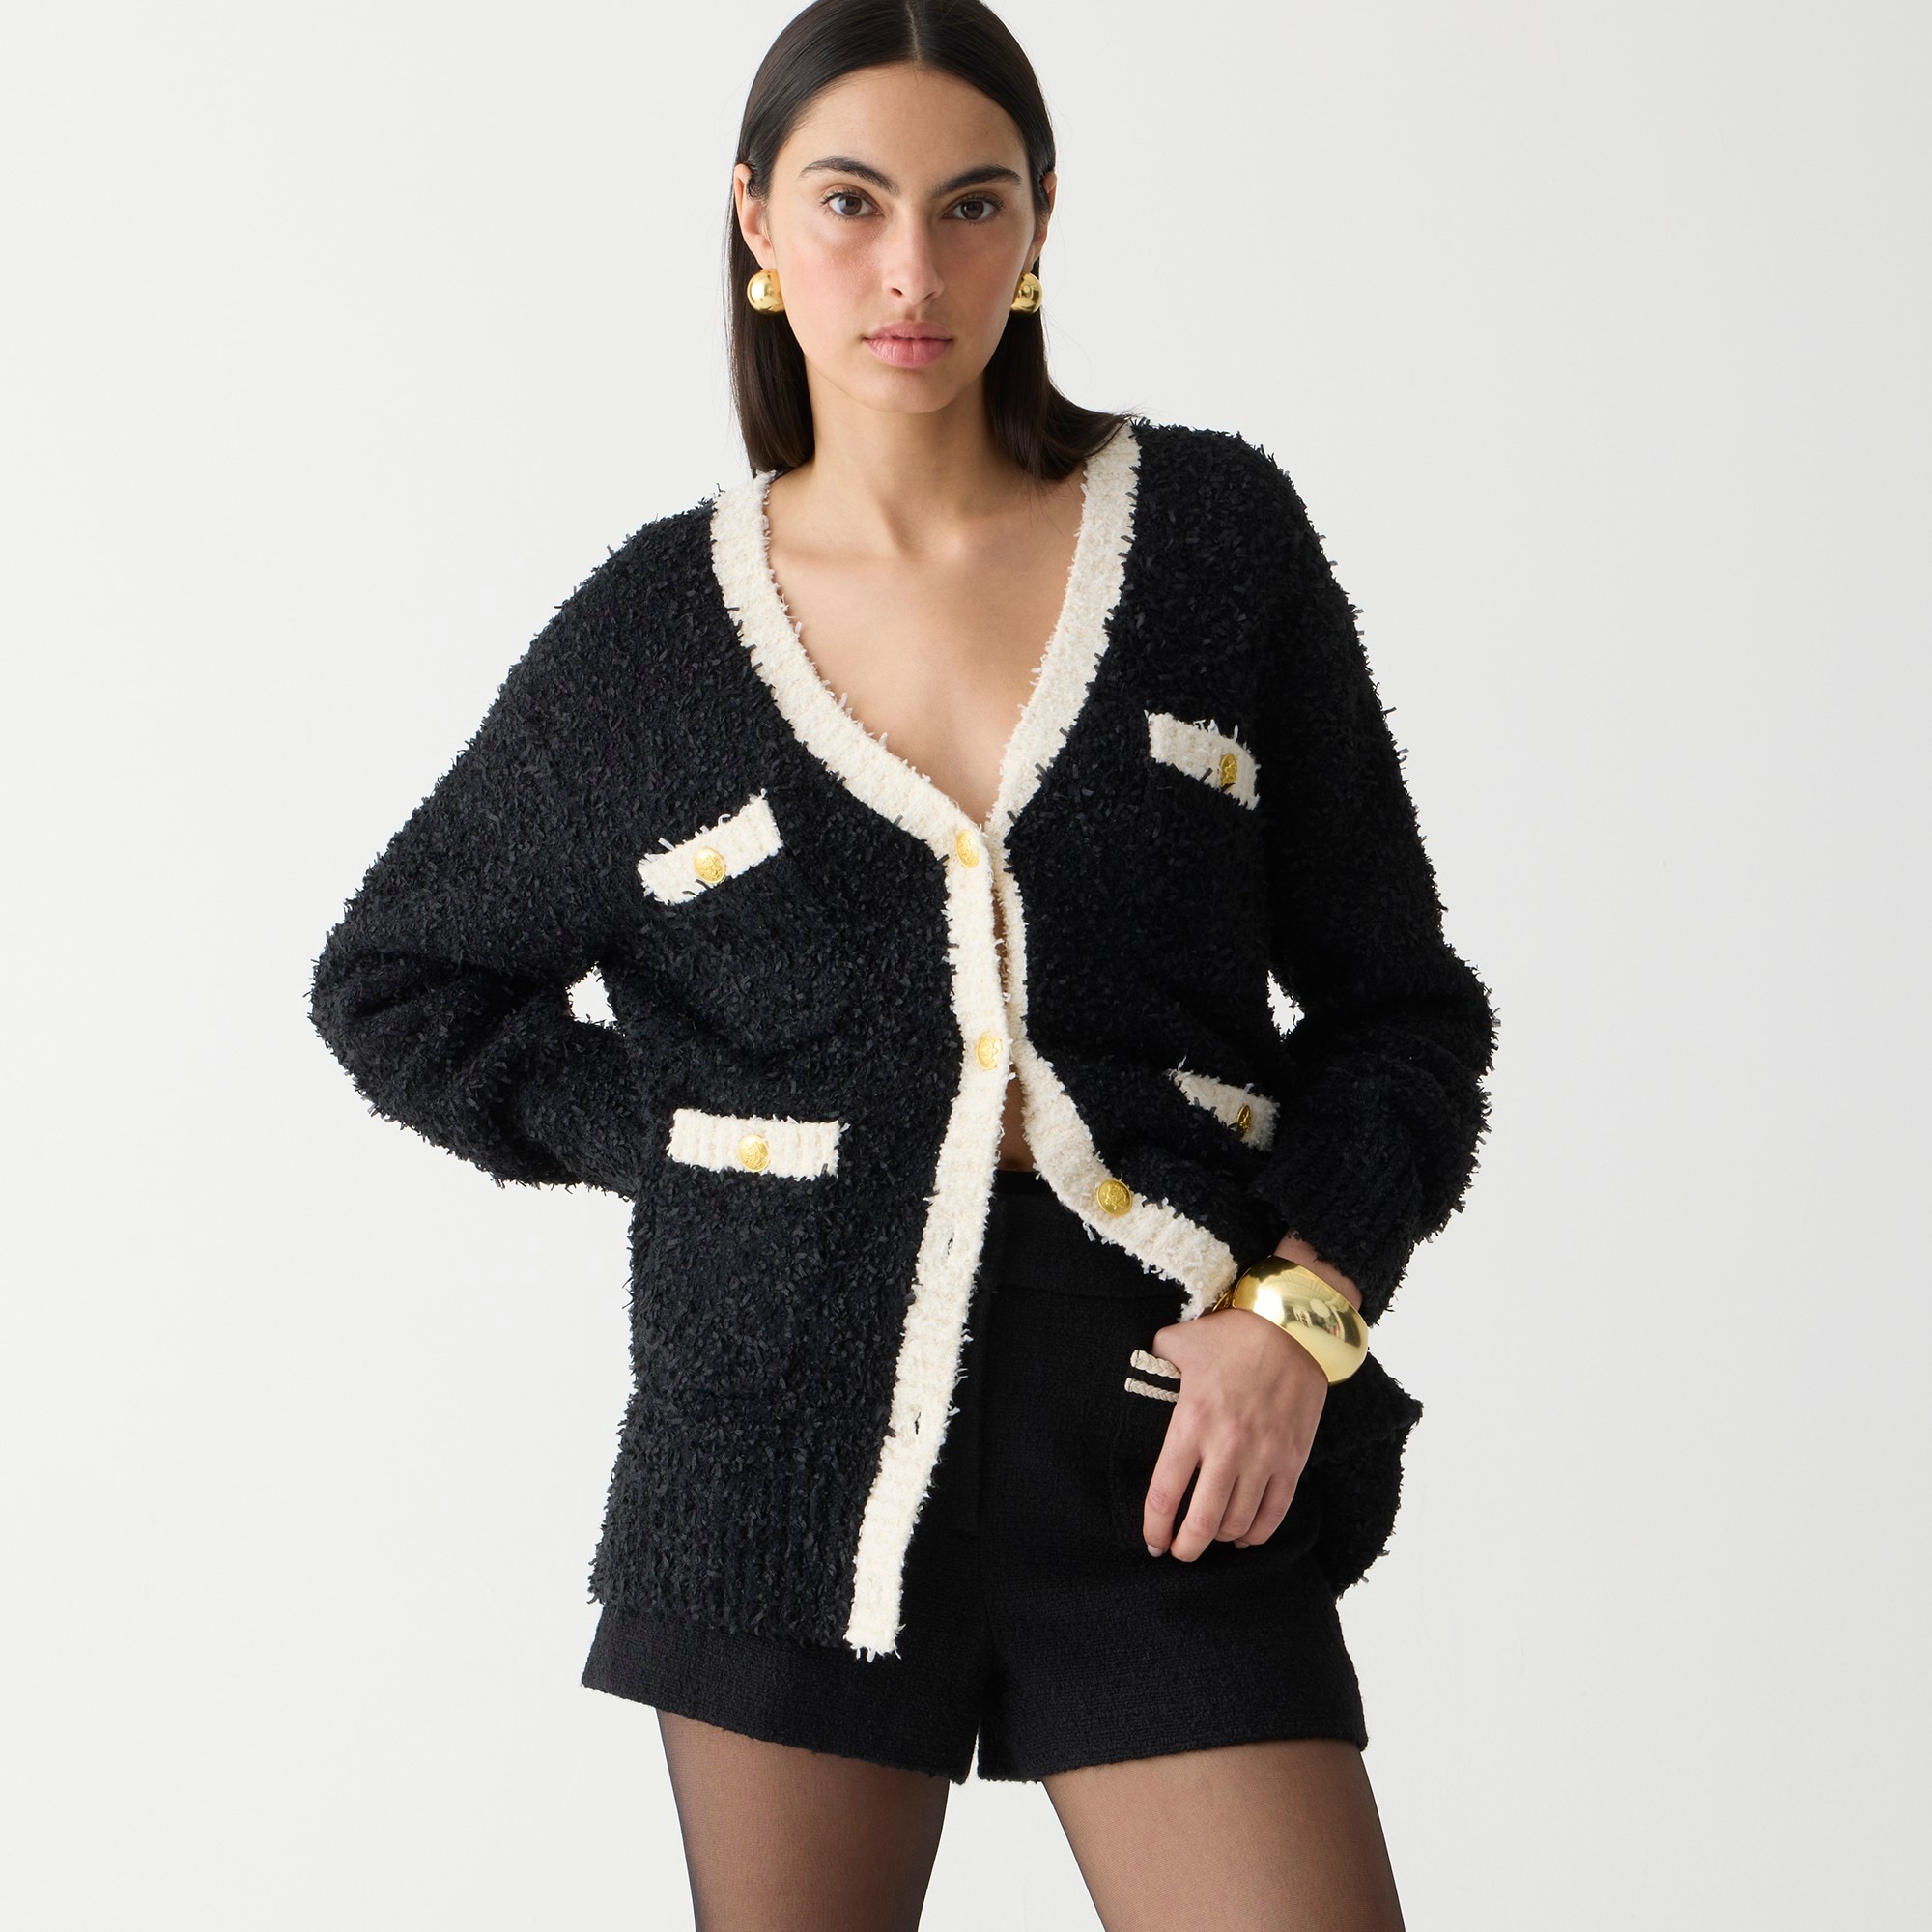 Jcrew Longer sweater lady jacket in textured contrast yarn